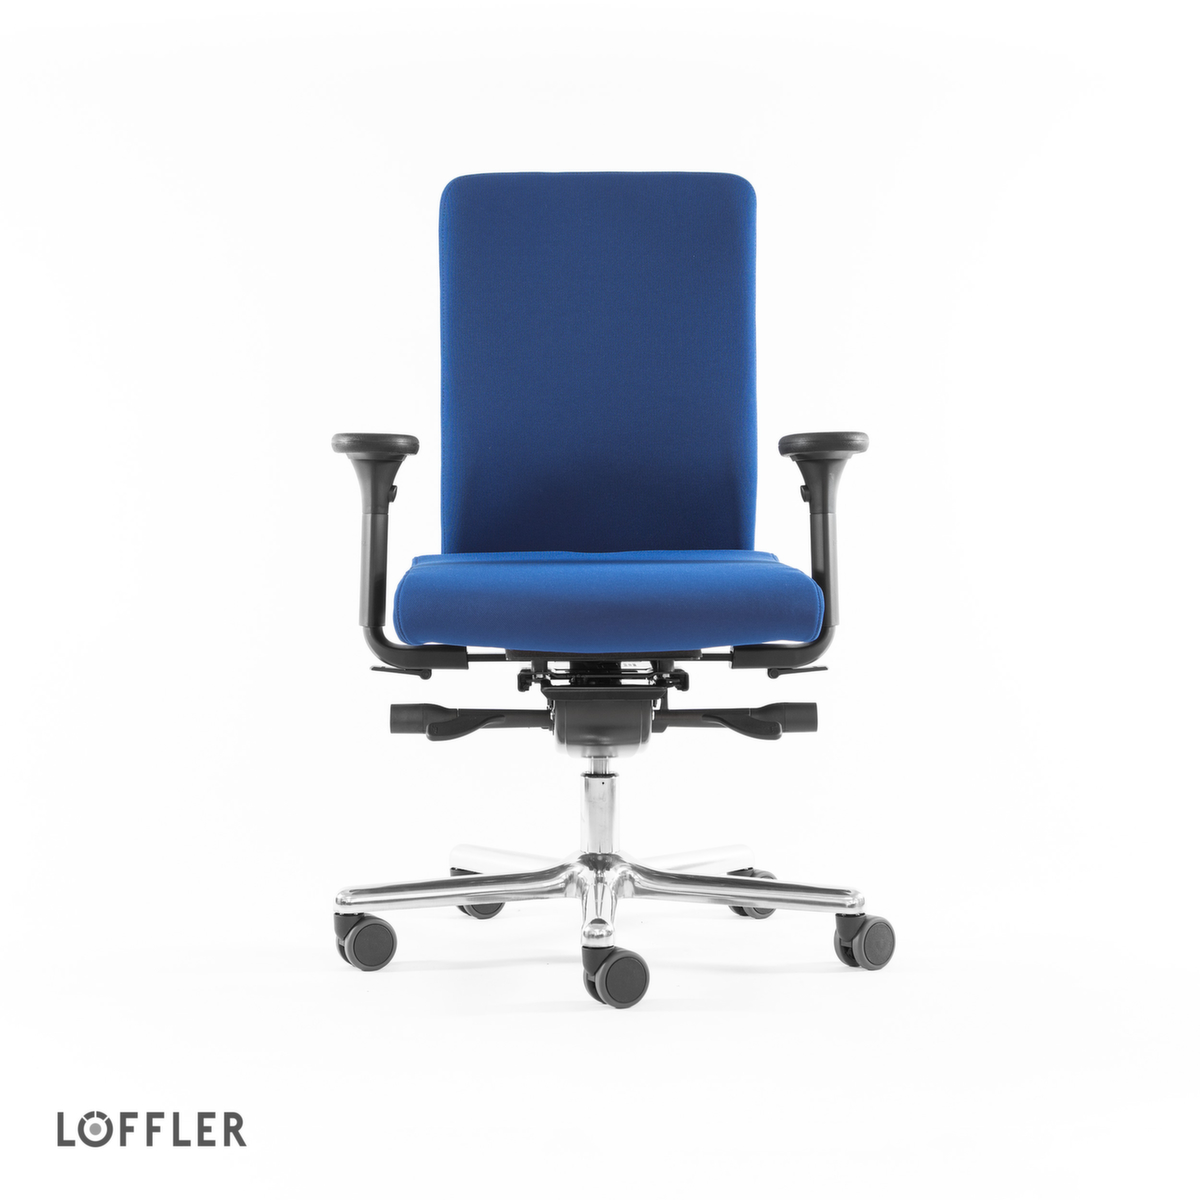 Löffler Bürodrehstuhl mit Taschenfederkern-Sitz, blau Standard 2 ZOOM